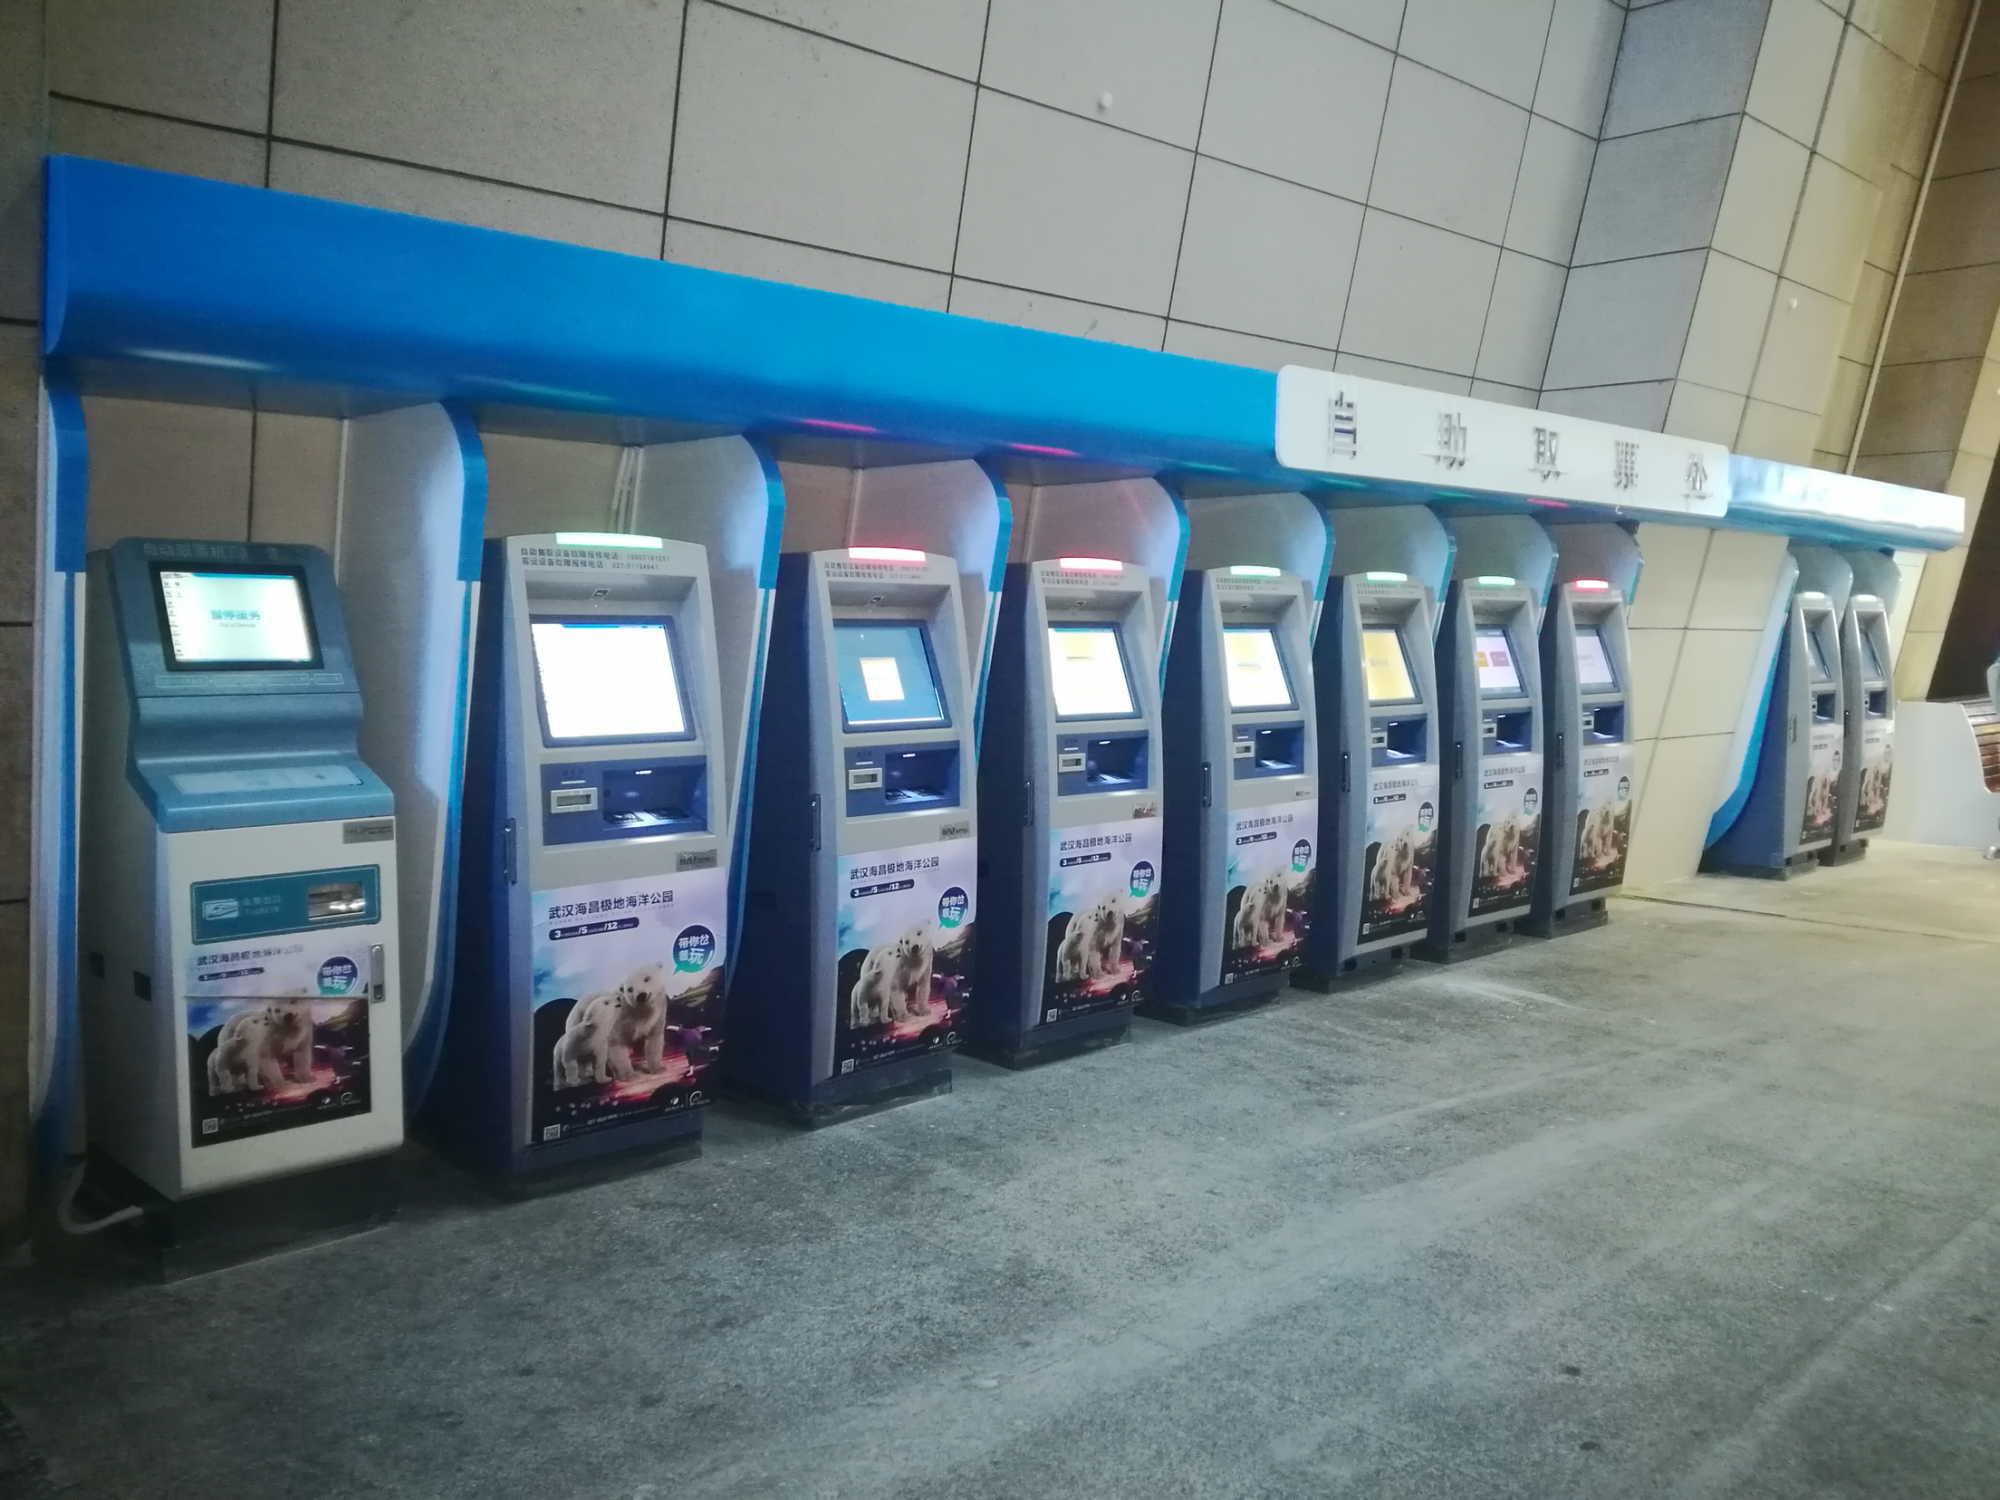 武汉火车站武昌站取票更便捷 10台专用自助取票机上岗